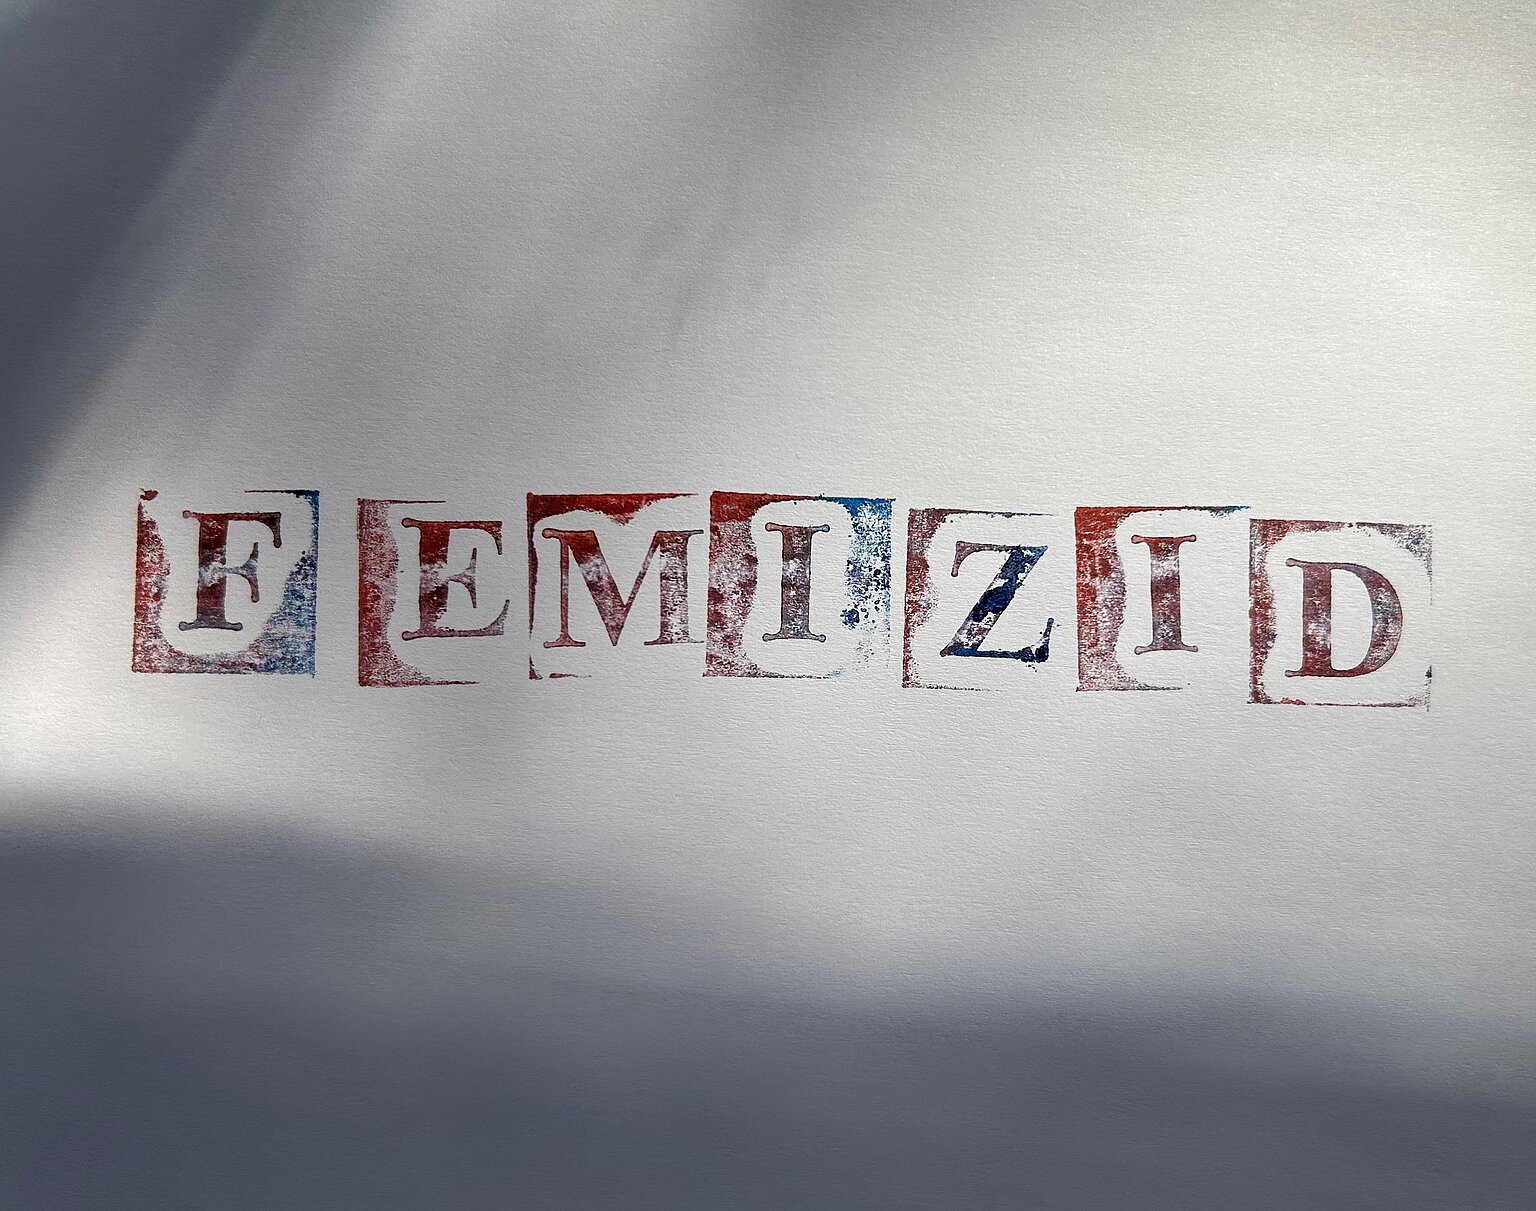  – Eine Initiative aus Investigativjournalistinnen hat einen Leitfaden herausgegeben, wie Medien mit dem Thema Femizid umgehen können. (Bild: journalist)